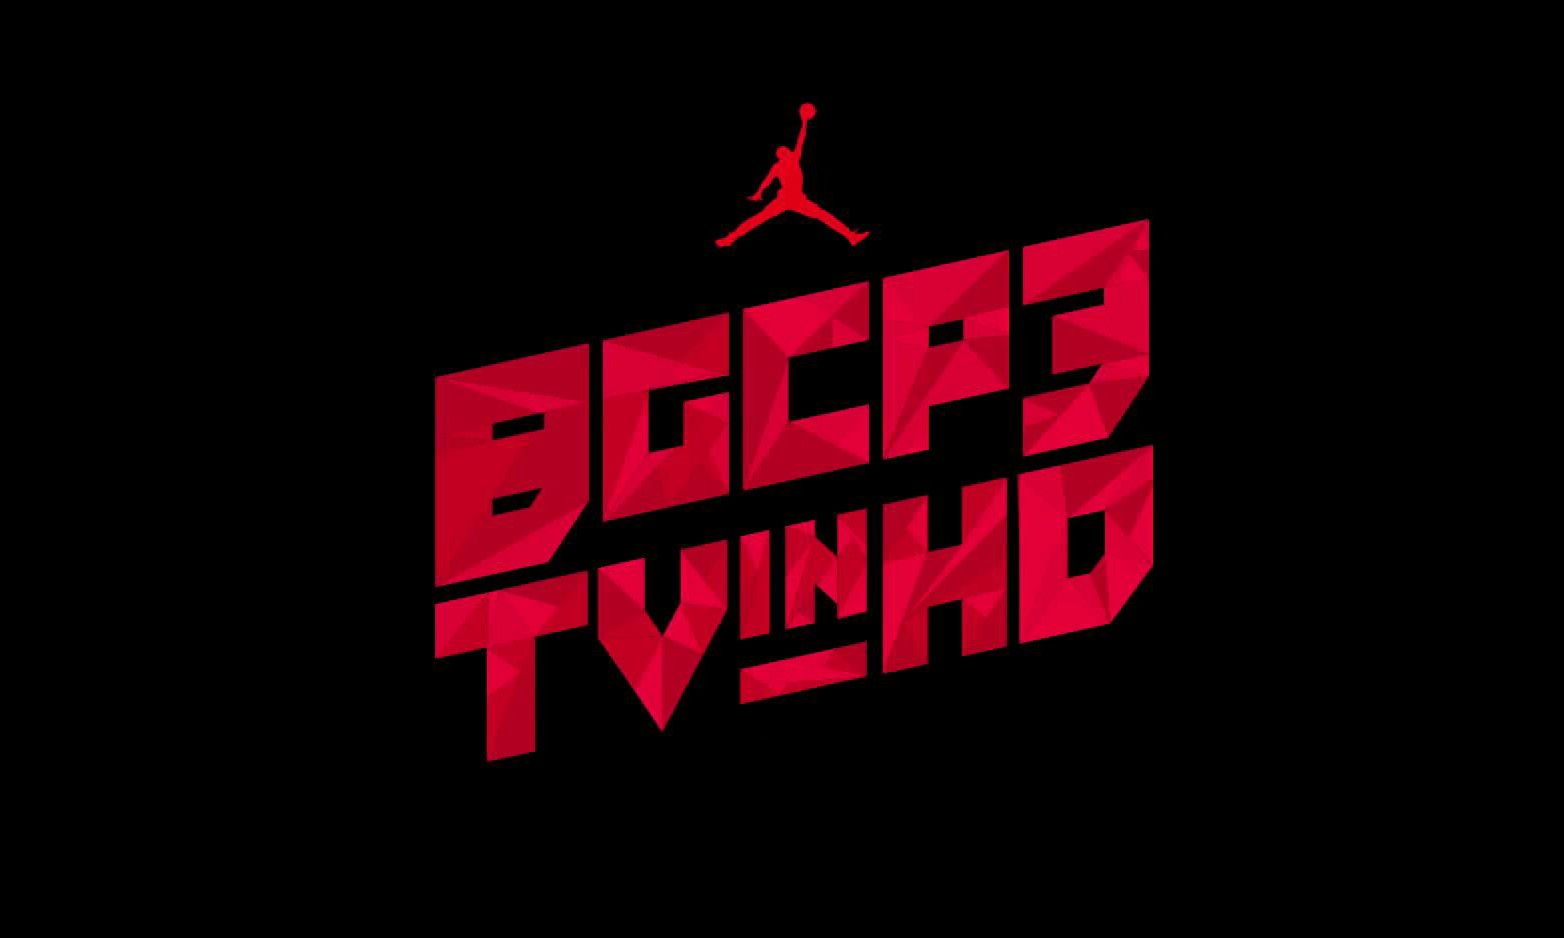 Jordn Brand 全新「BGCP3TVinHD」节目预告